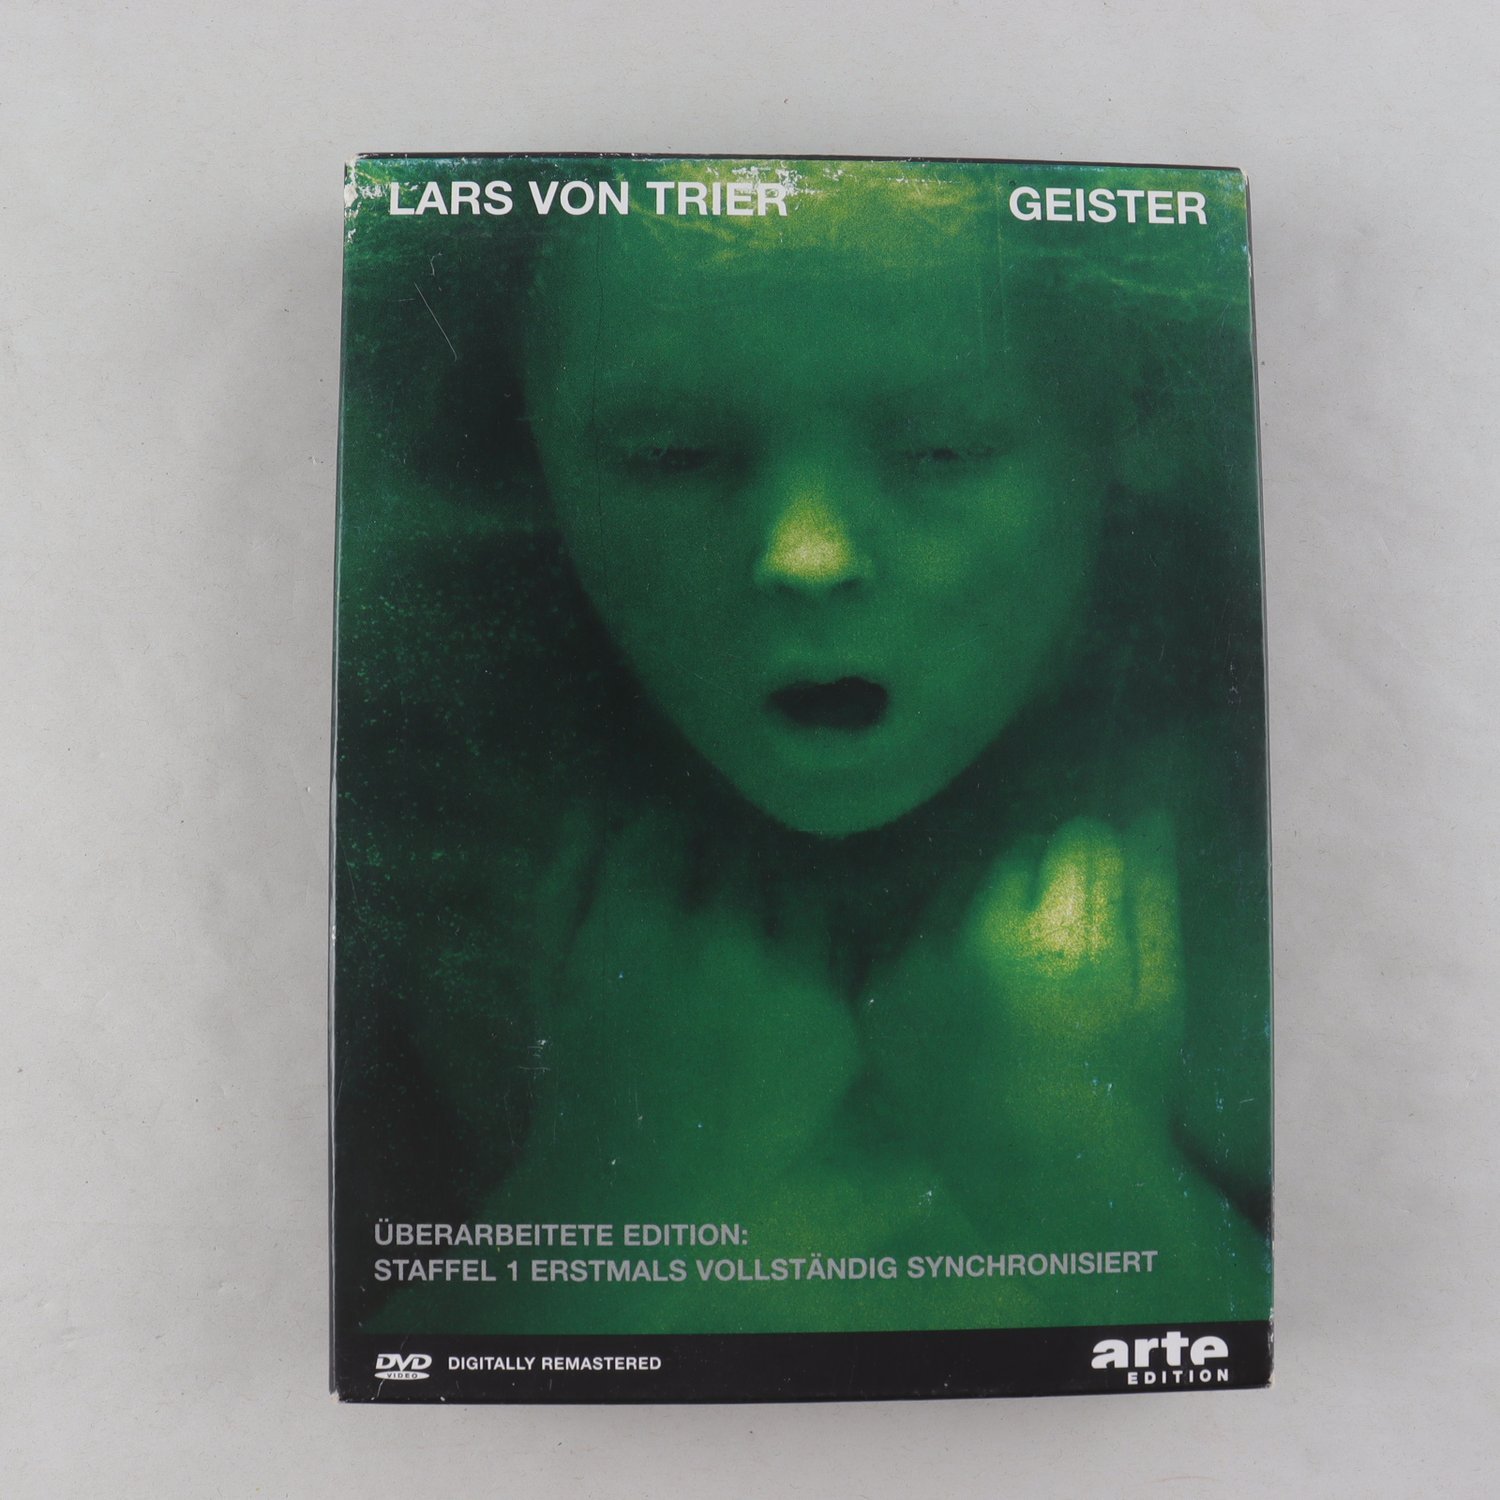 DVD Box Lars Von Trier, Geister (überarbeitete edition)